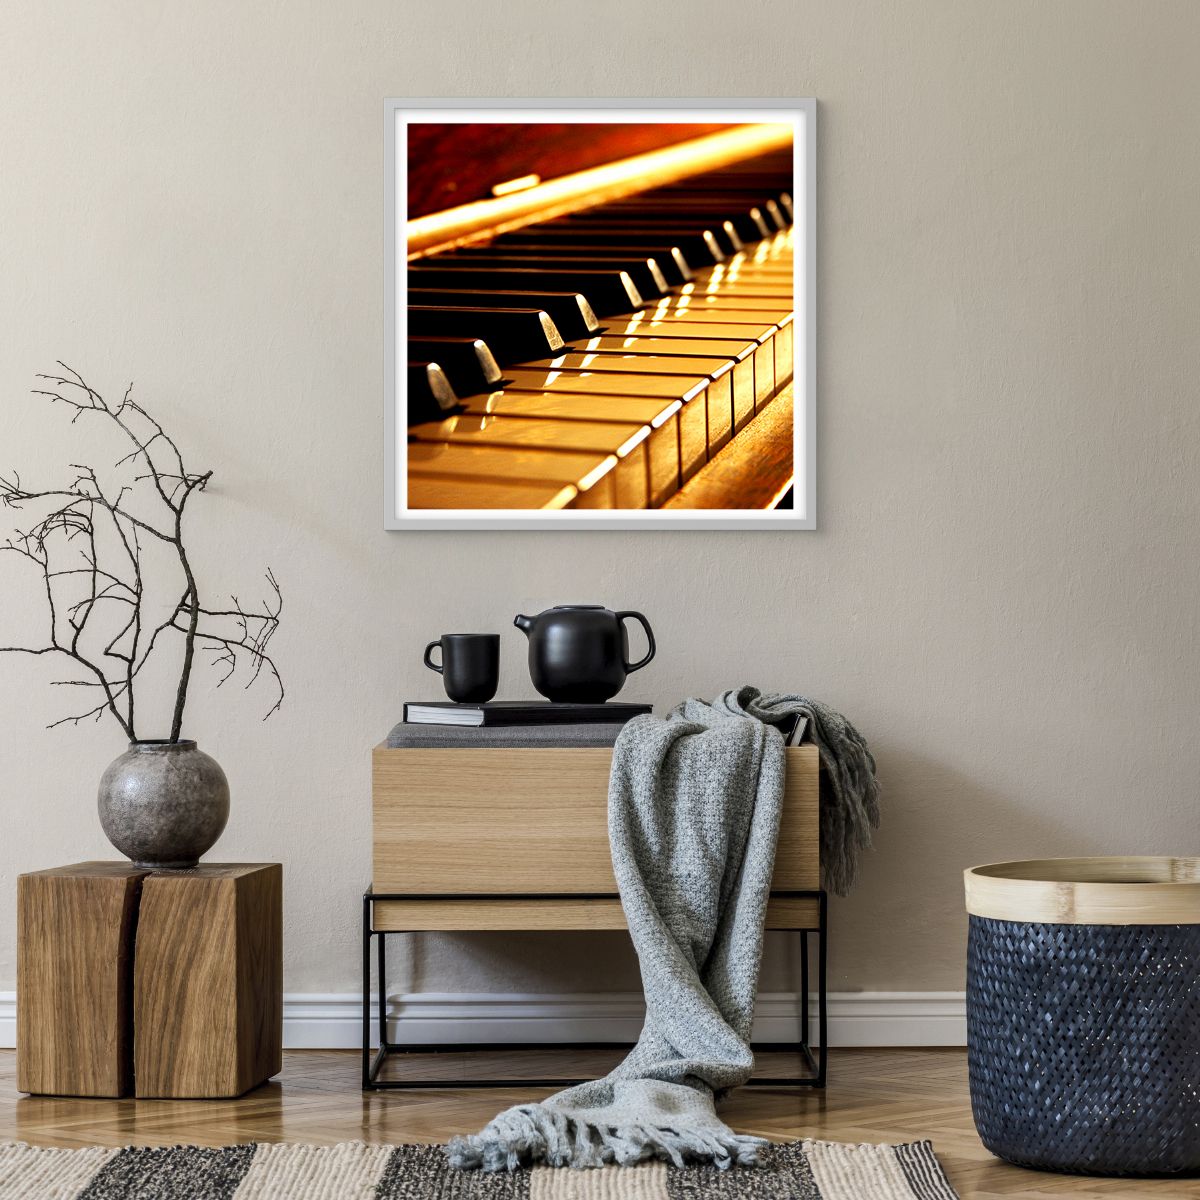 Poster in einem weißen Rahmen Musik, Poster in einem weißen Rahmen Klavier, Poster in einem weißen Rahmen Musikinstrument, Poster in einem weißen Rahmen Klavier, Poster in einem weißen Rahmen Kultur